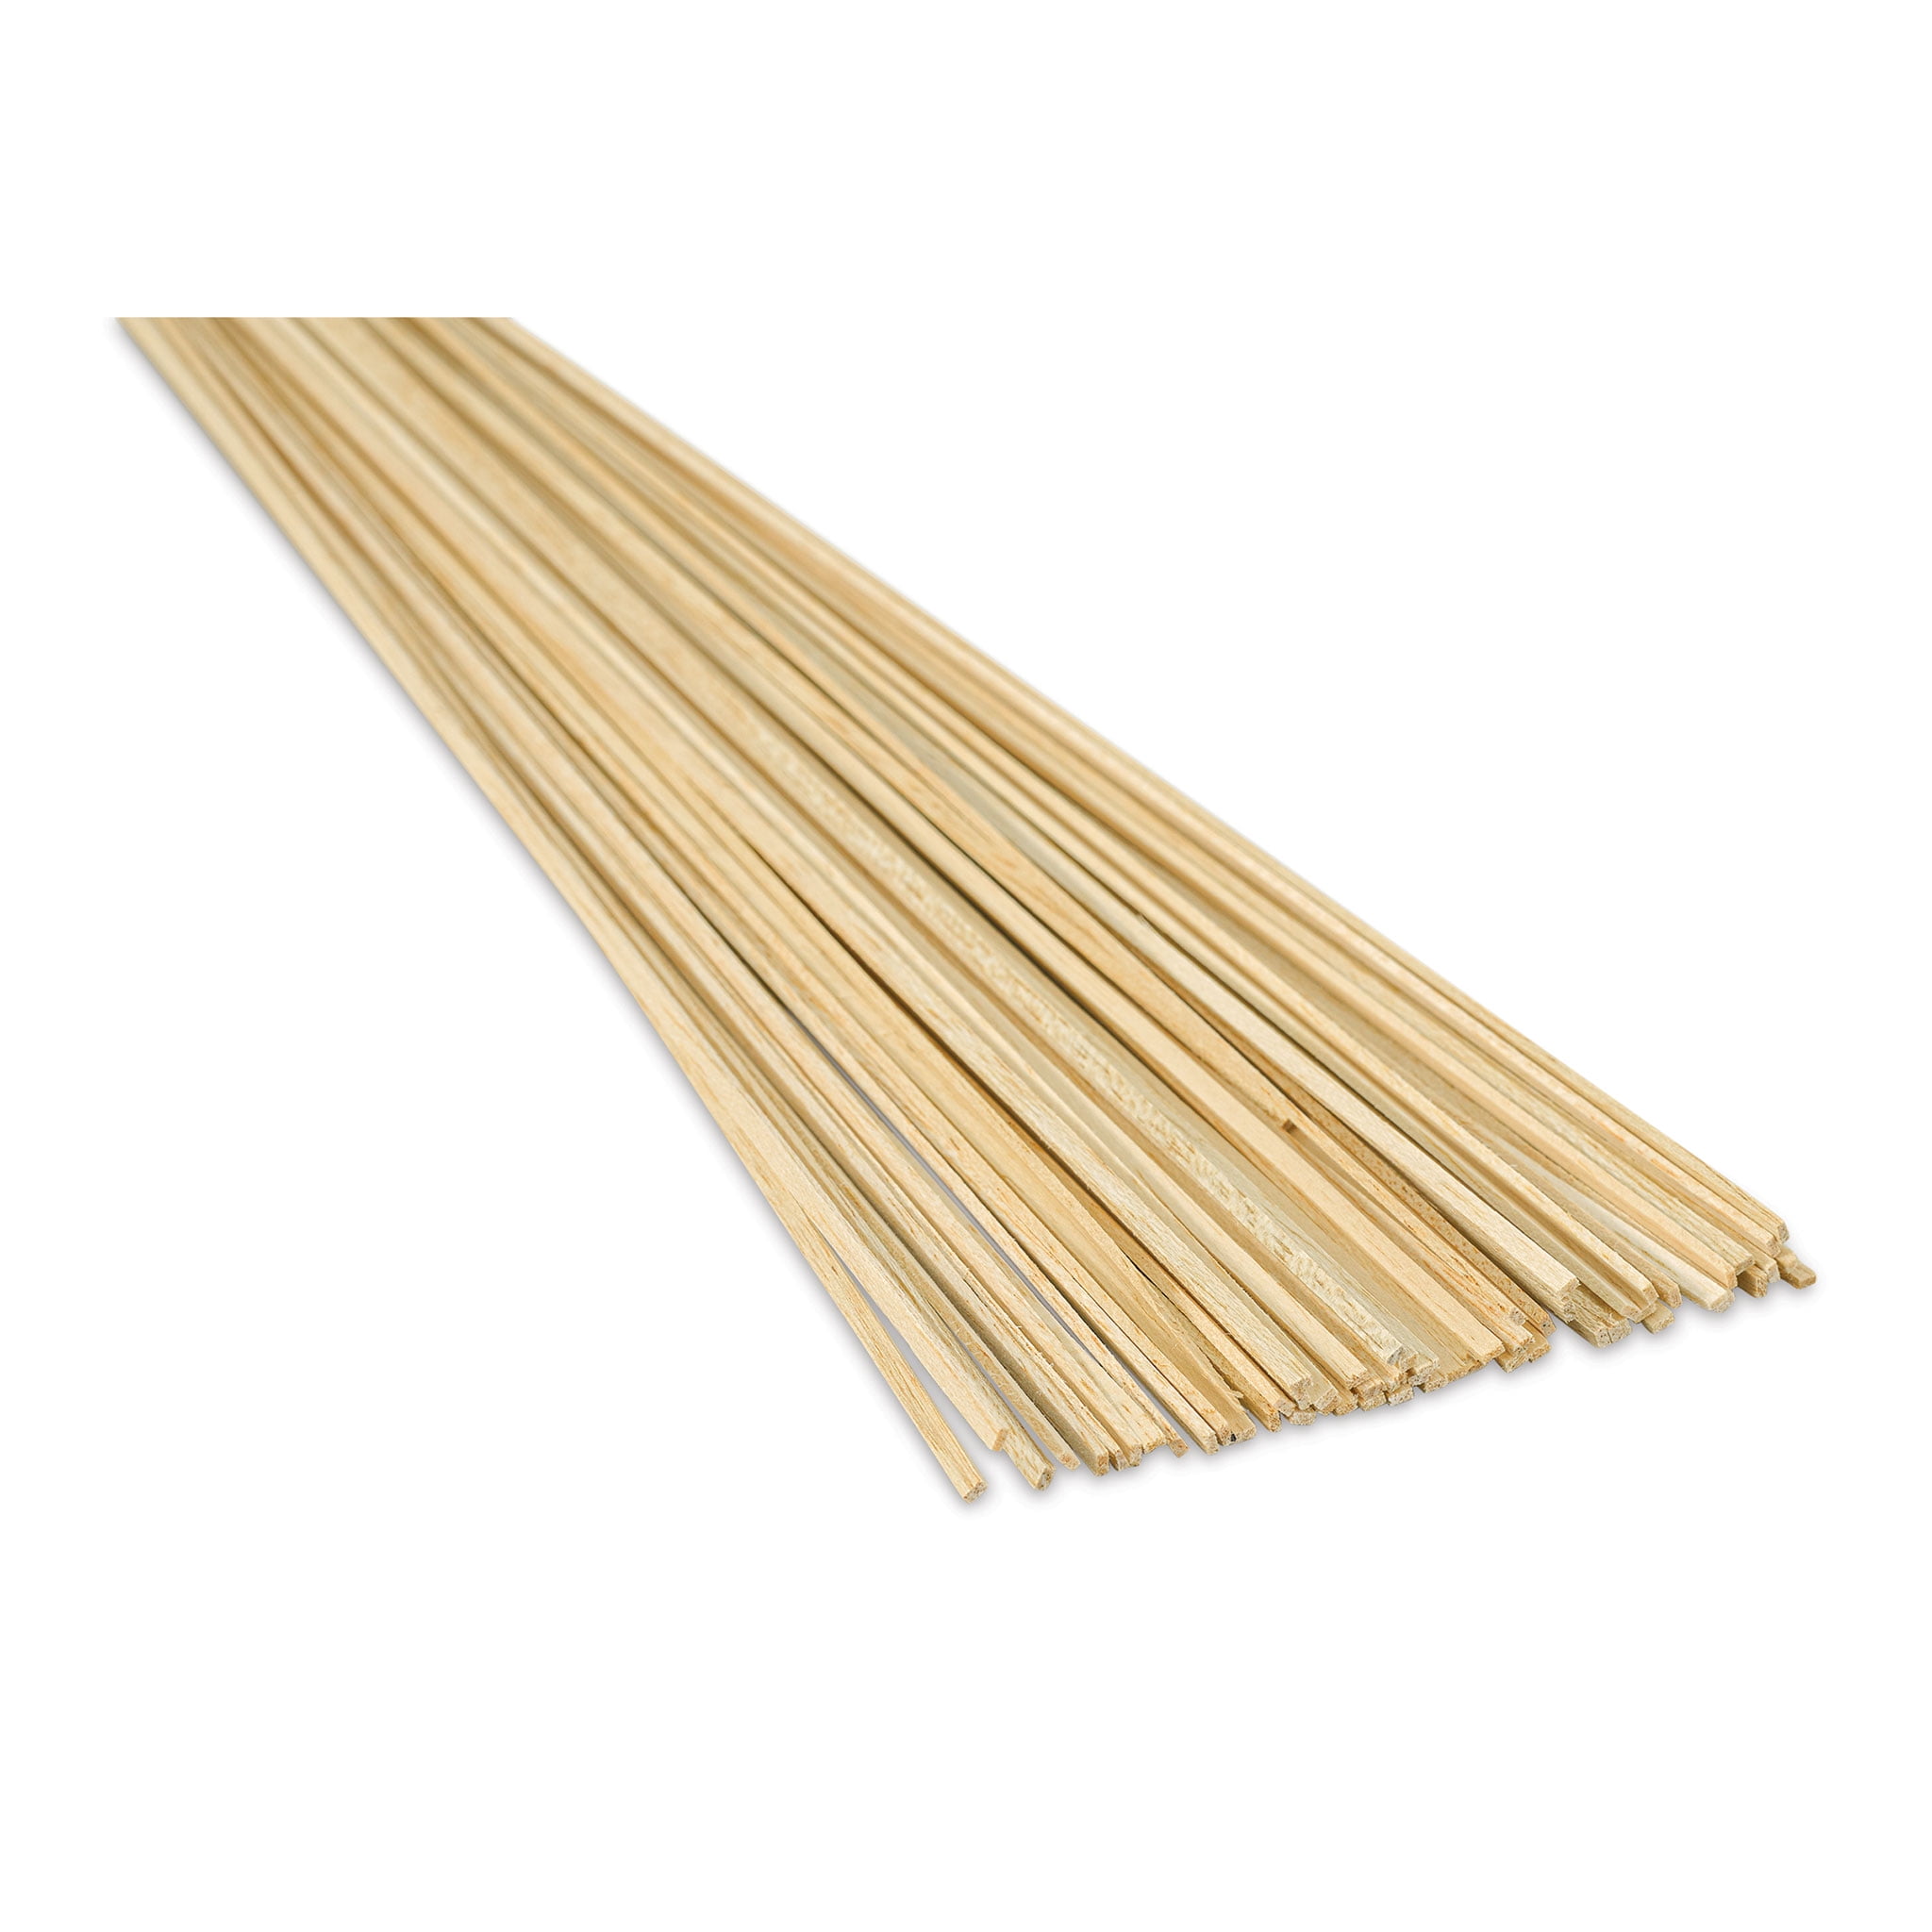 1/16 x 1/8 x 48 Basswood Sticks – National Balsa